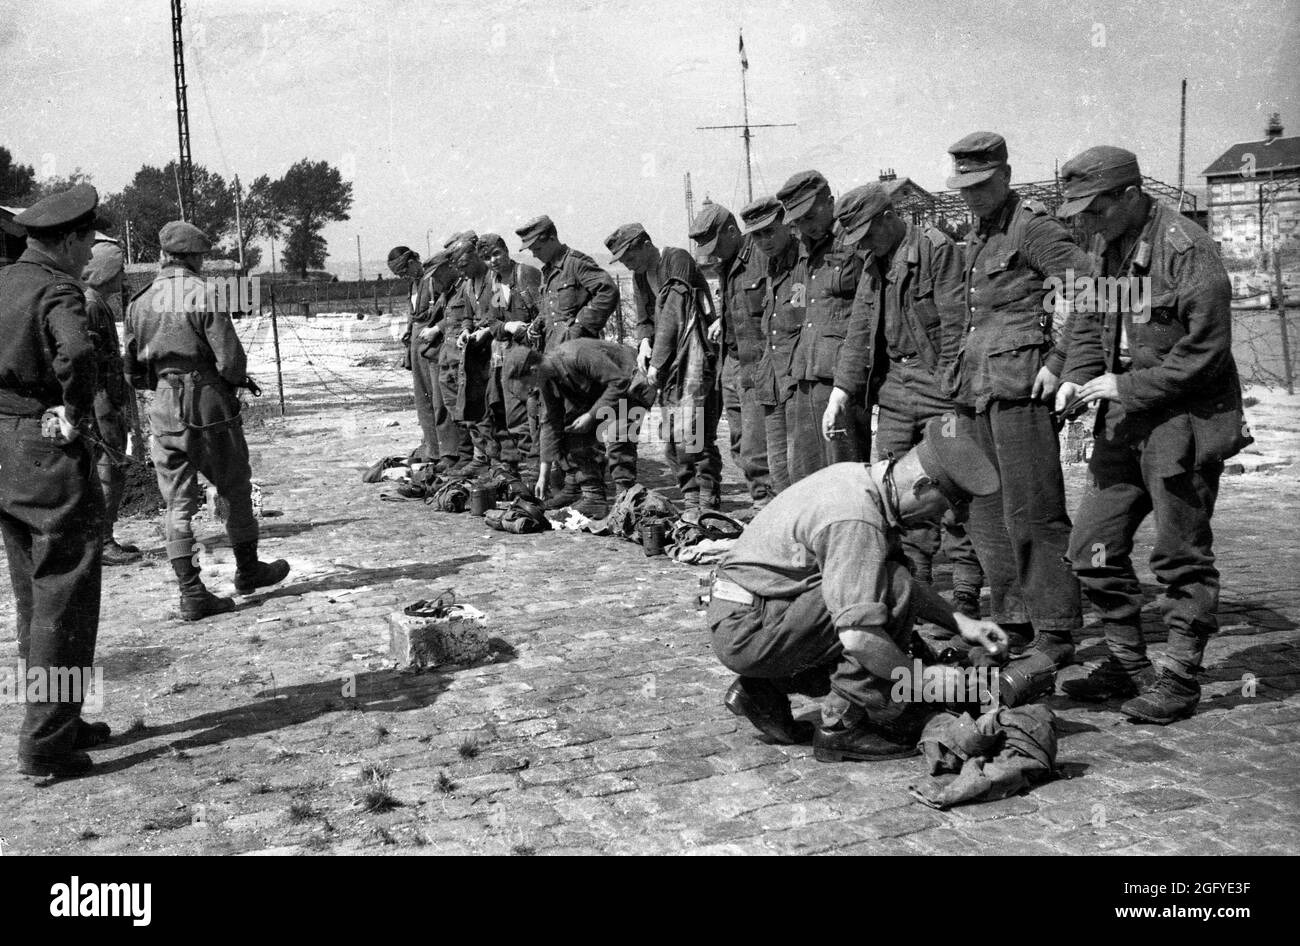 Die Befreiung von Honfleur, Normandie, Frankreich während des zweiten Weltkrieges. 26. August 1944. Britische und kanadische Soldaten suchen nach ihrer Kapitulation junge deutsche Soldaten. Stockfoto